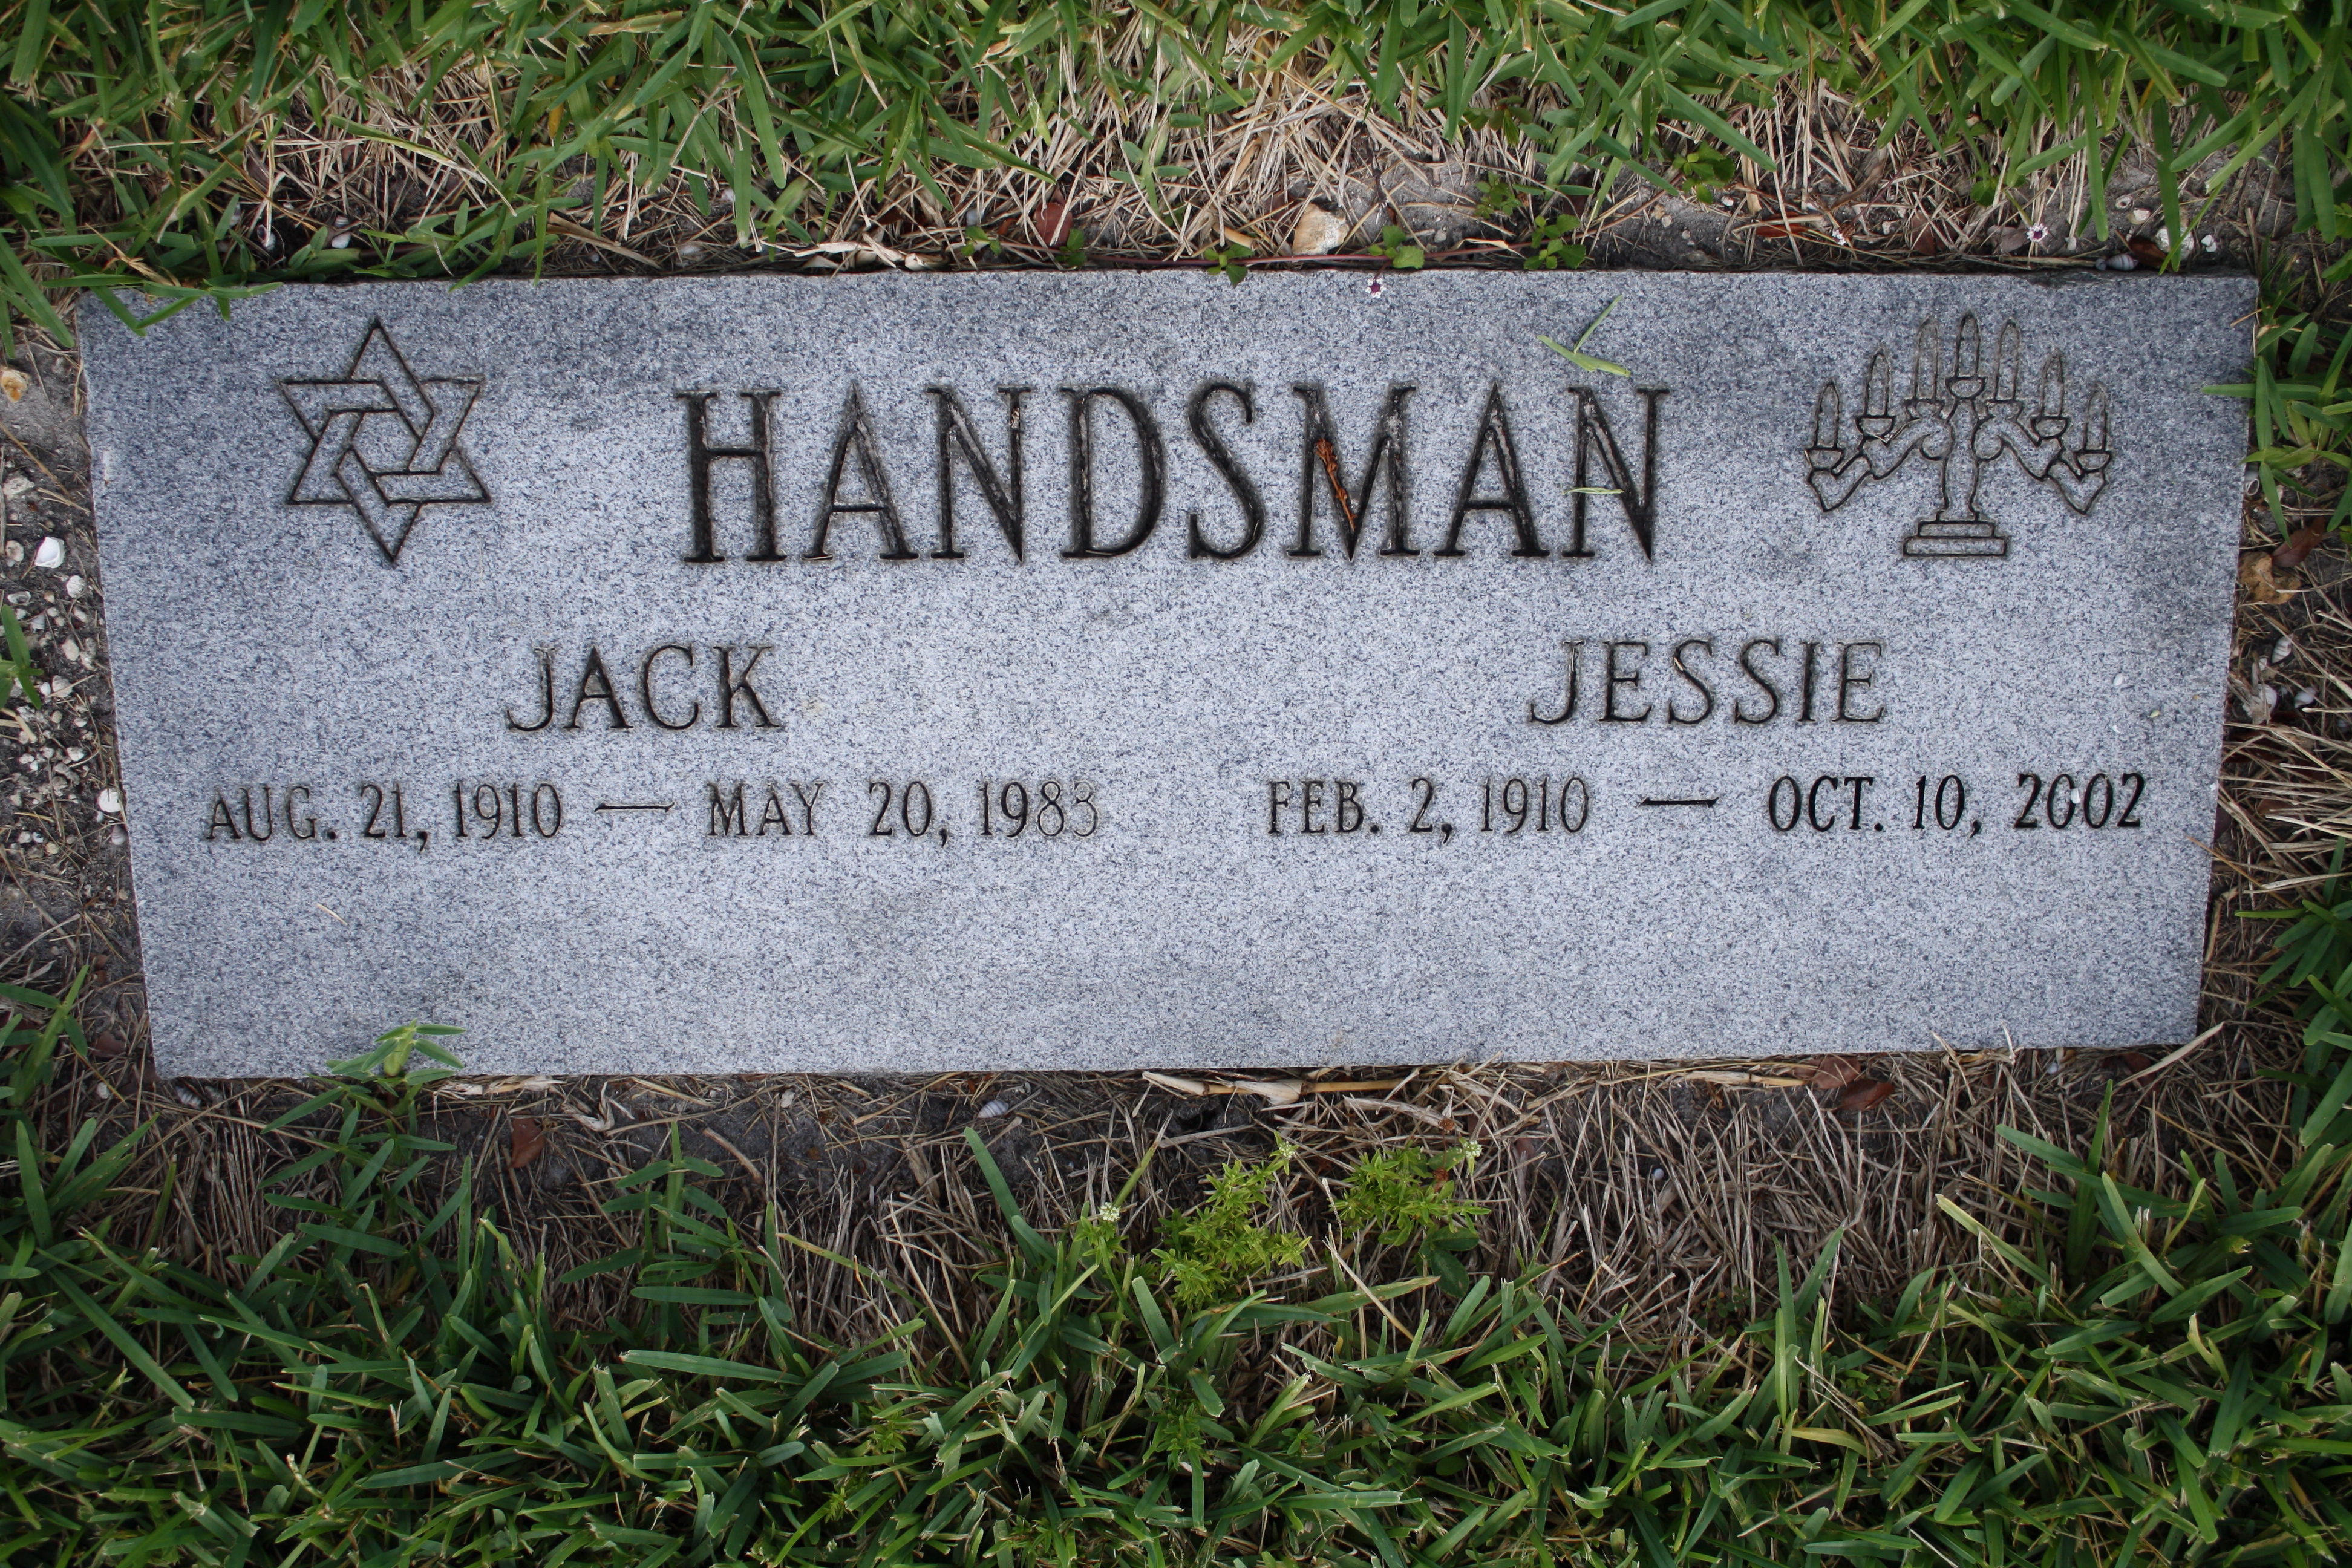 Jack Handsman